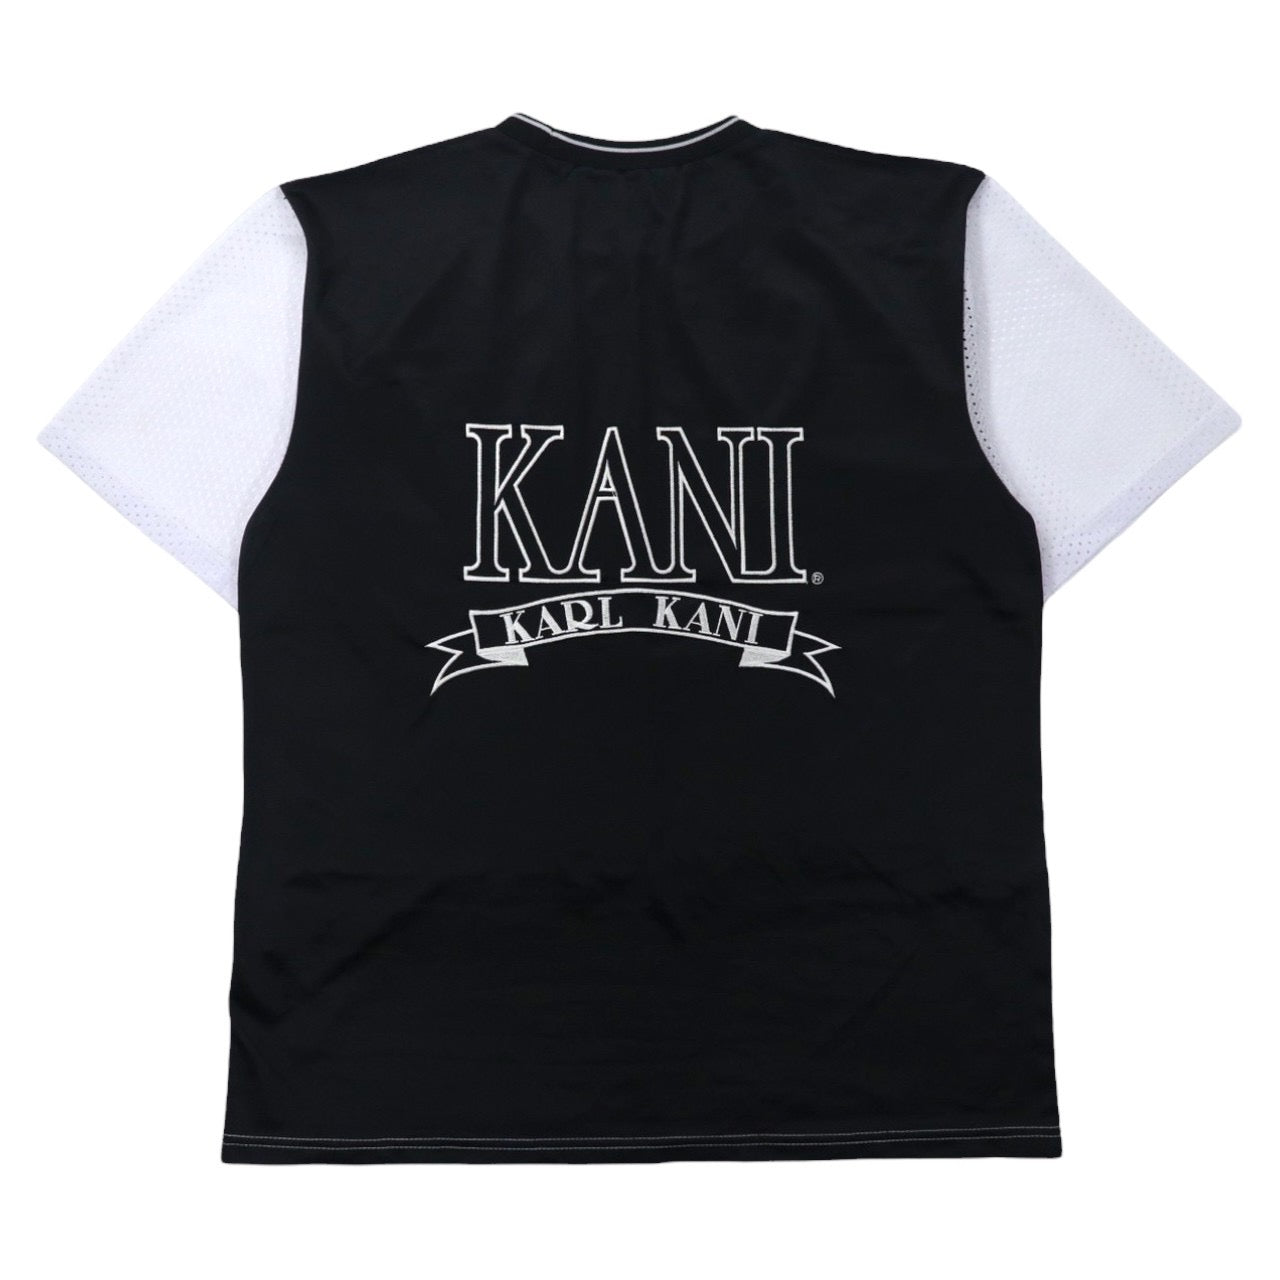 KANI SPORT ( KARL KANI ) ゲームシャツ メッシュ切替 Tシャツ M